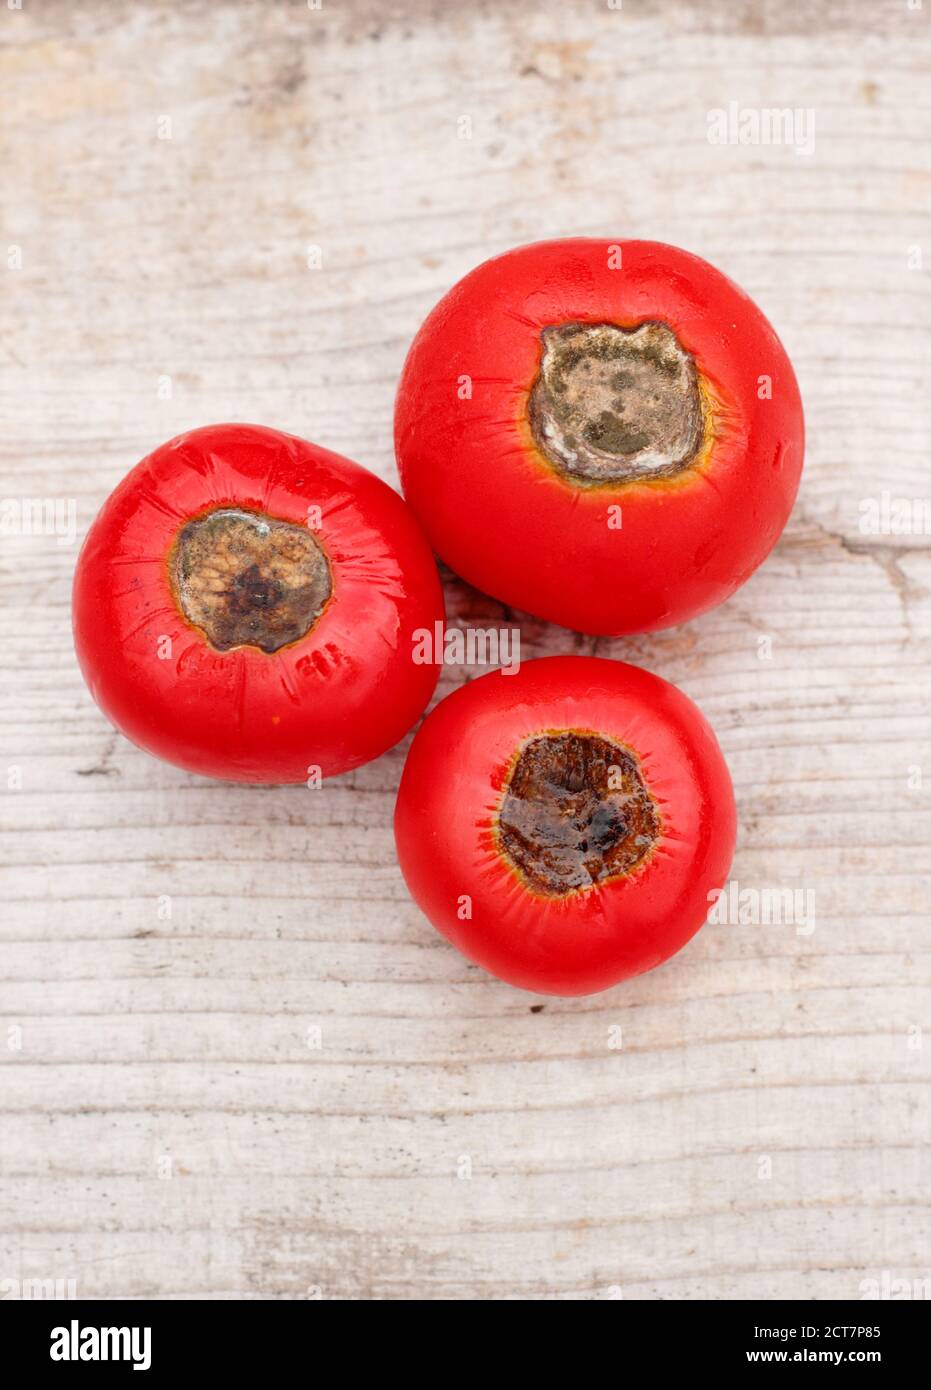 Selbstgewachsene Tomaten mit Blütenendfäule, die durch Kalziummangel und damit verbundene Bewässerungsprobleme verursacht wird. Solanum lycopersicum 'Alicante'. Stockfoto